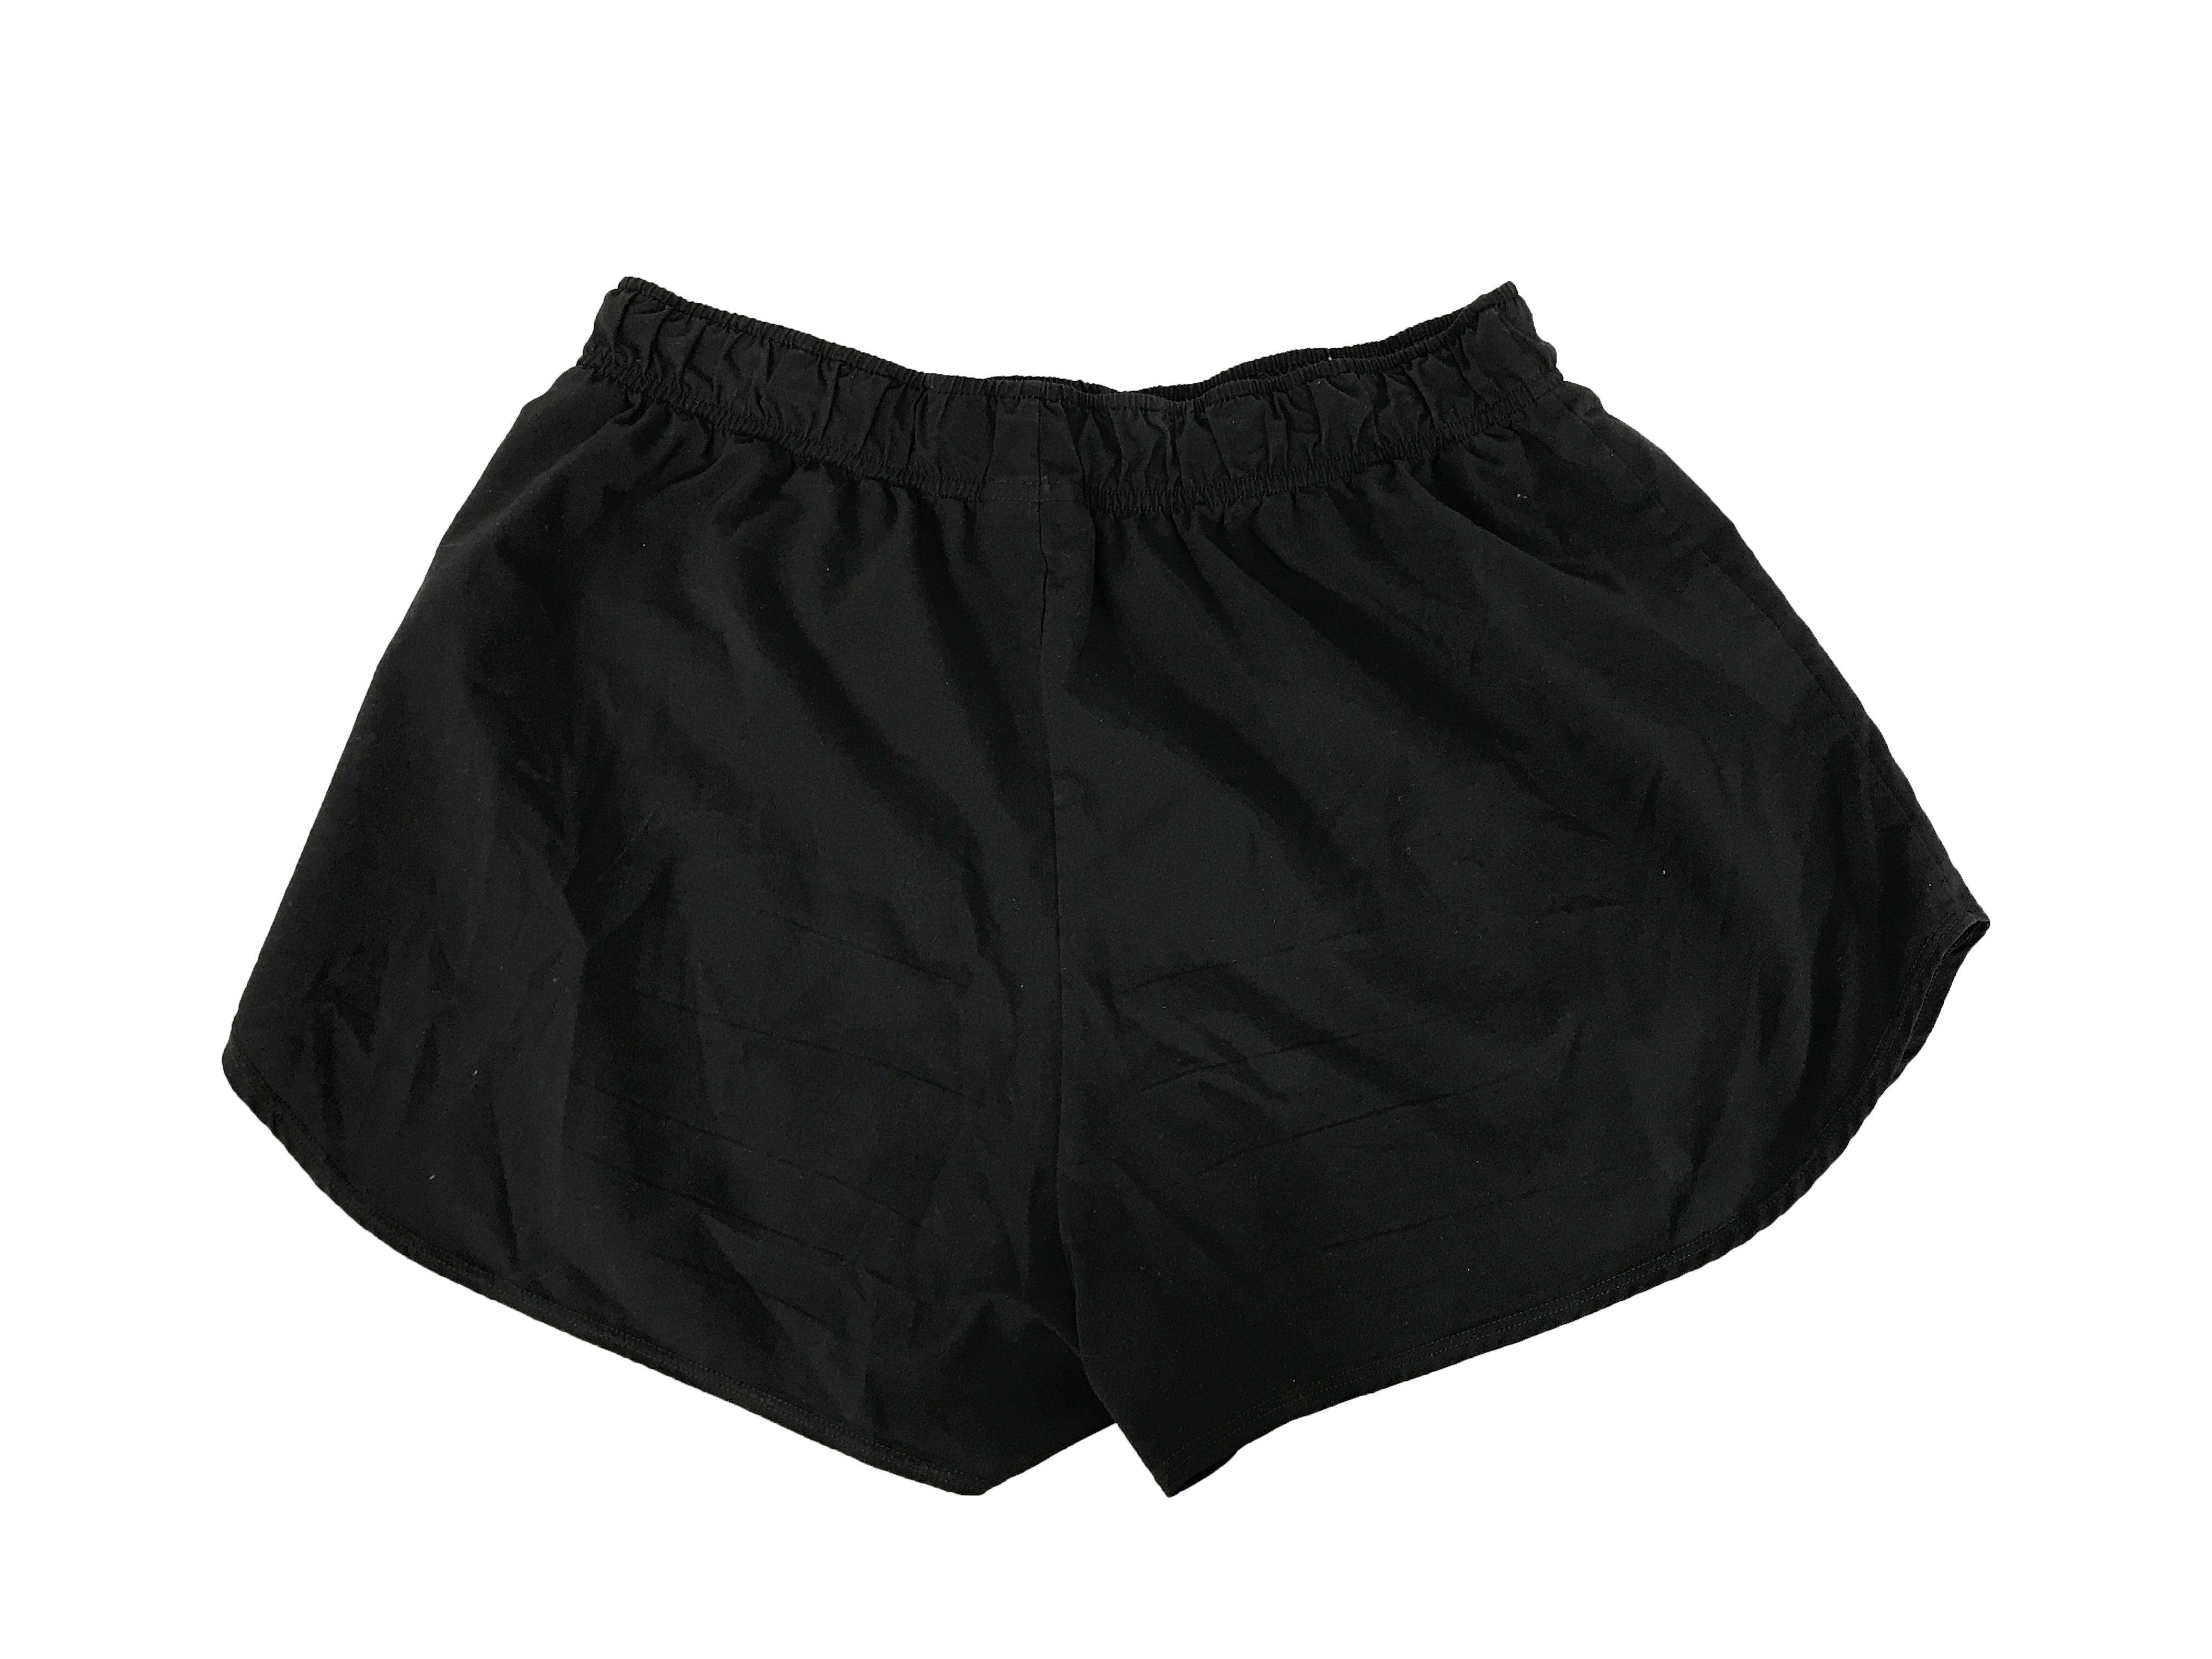 Gymshark Women's 2.5" Black Shorts